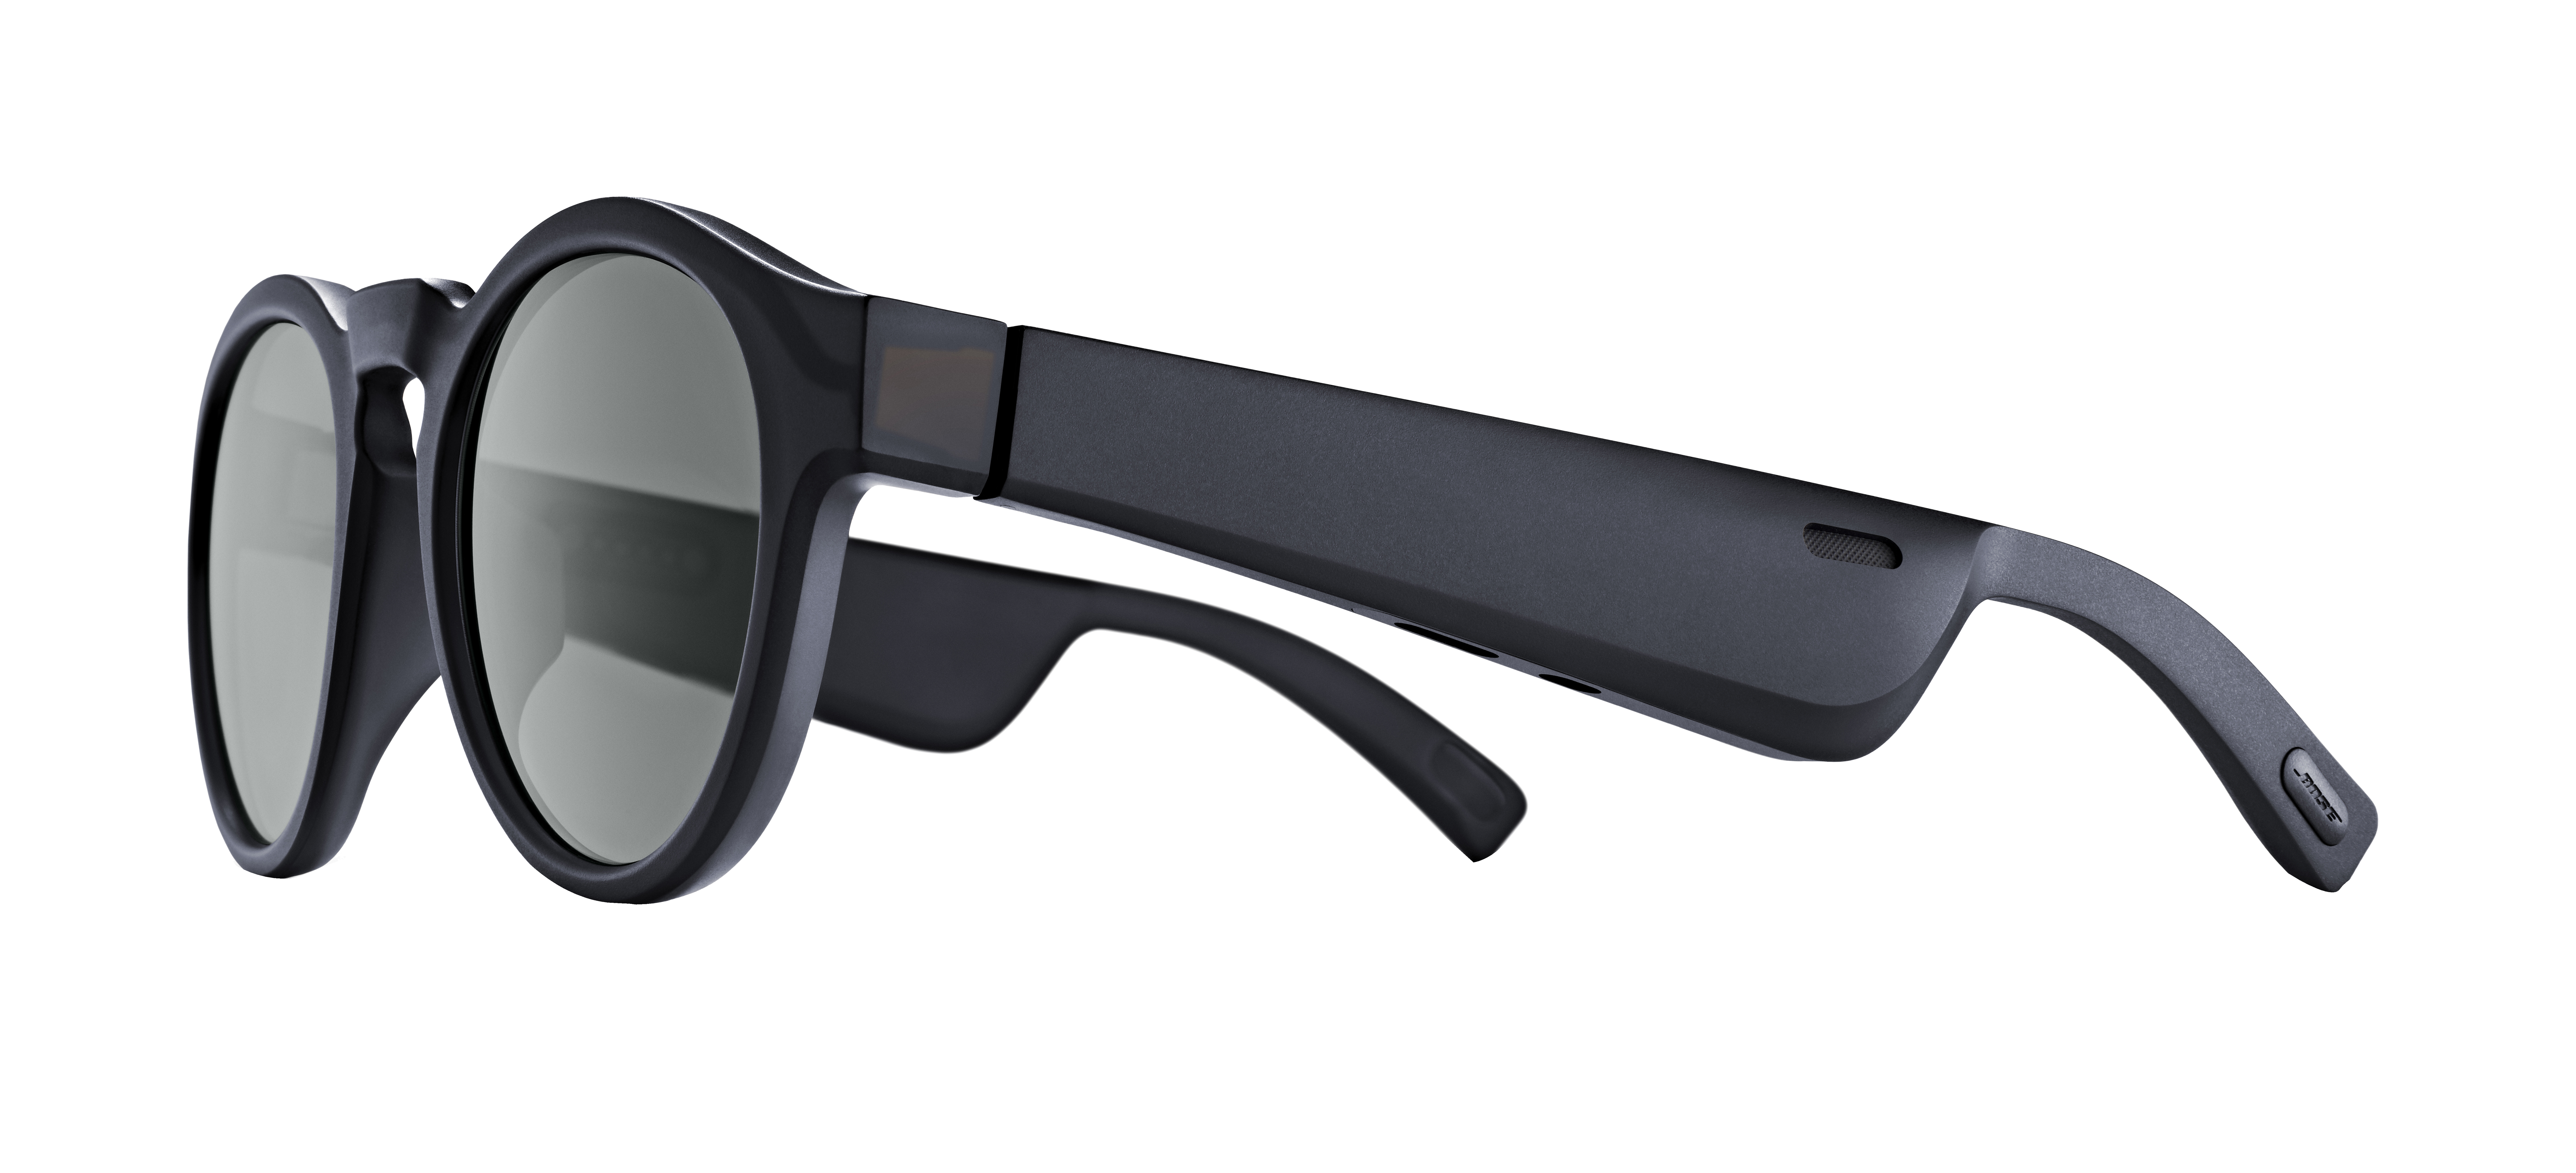 Bose Frames Rondo Bluetooth Audio Sunglasses